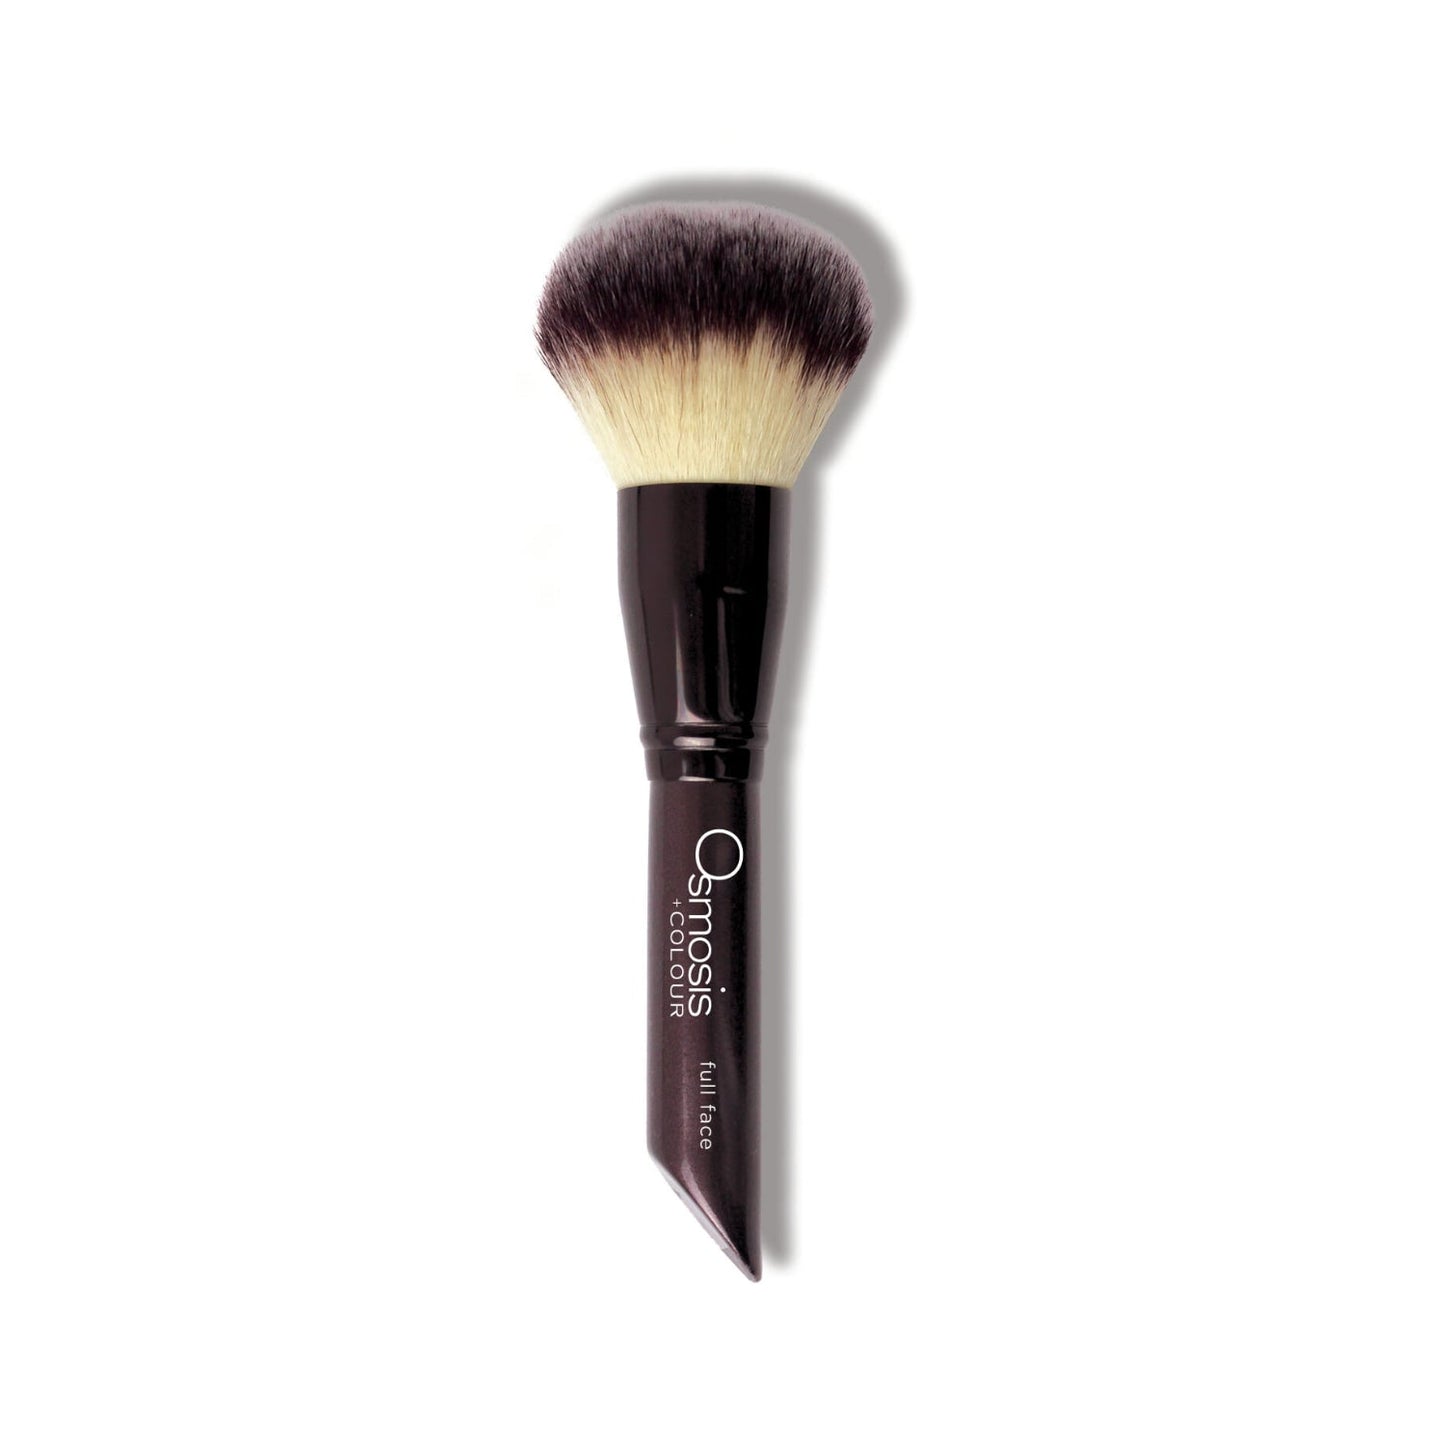 Full face makeup brush - Osmosis Beauty Makeup